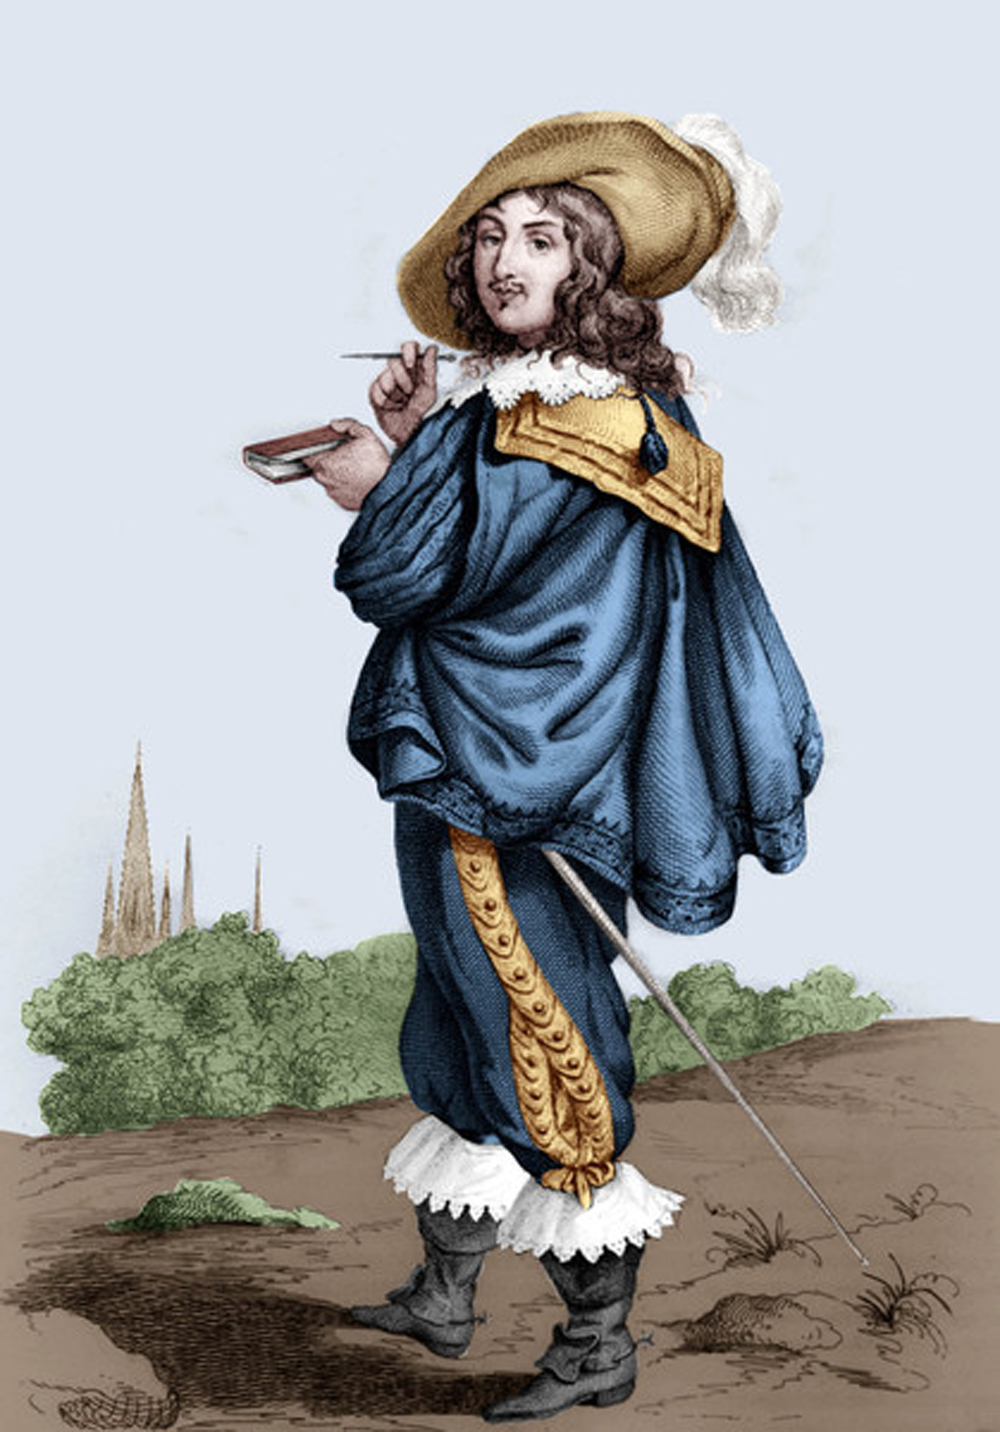 François de La Rochefoucauld, engraving by A. Boilly. © PVDE / Bridgeman Images.